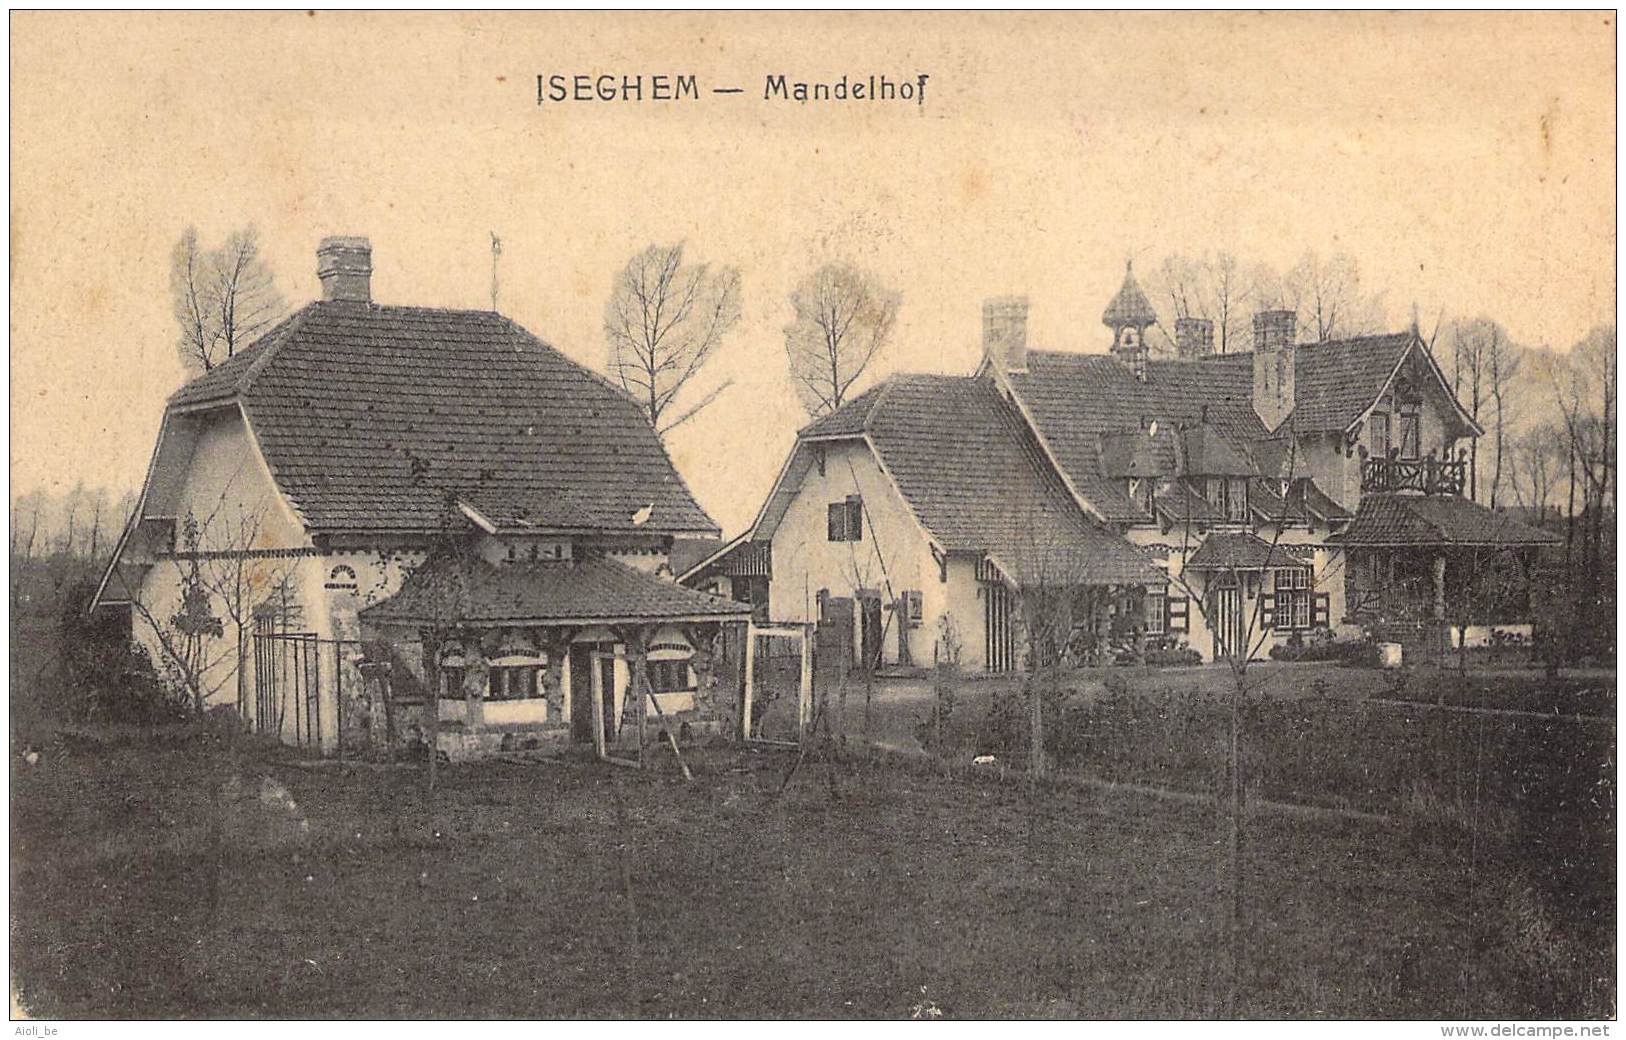 ISEGHEM - Mandelhof. - Pittem